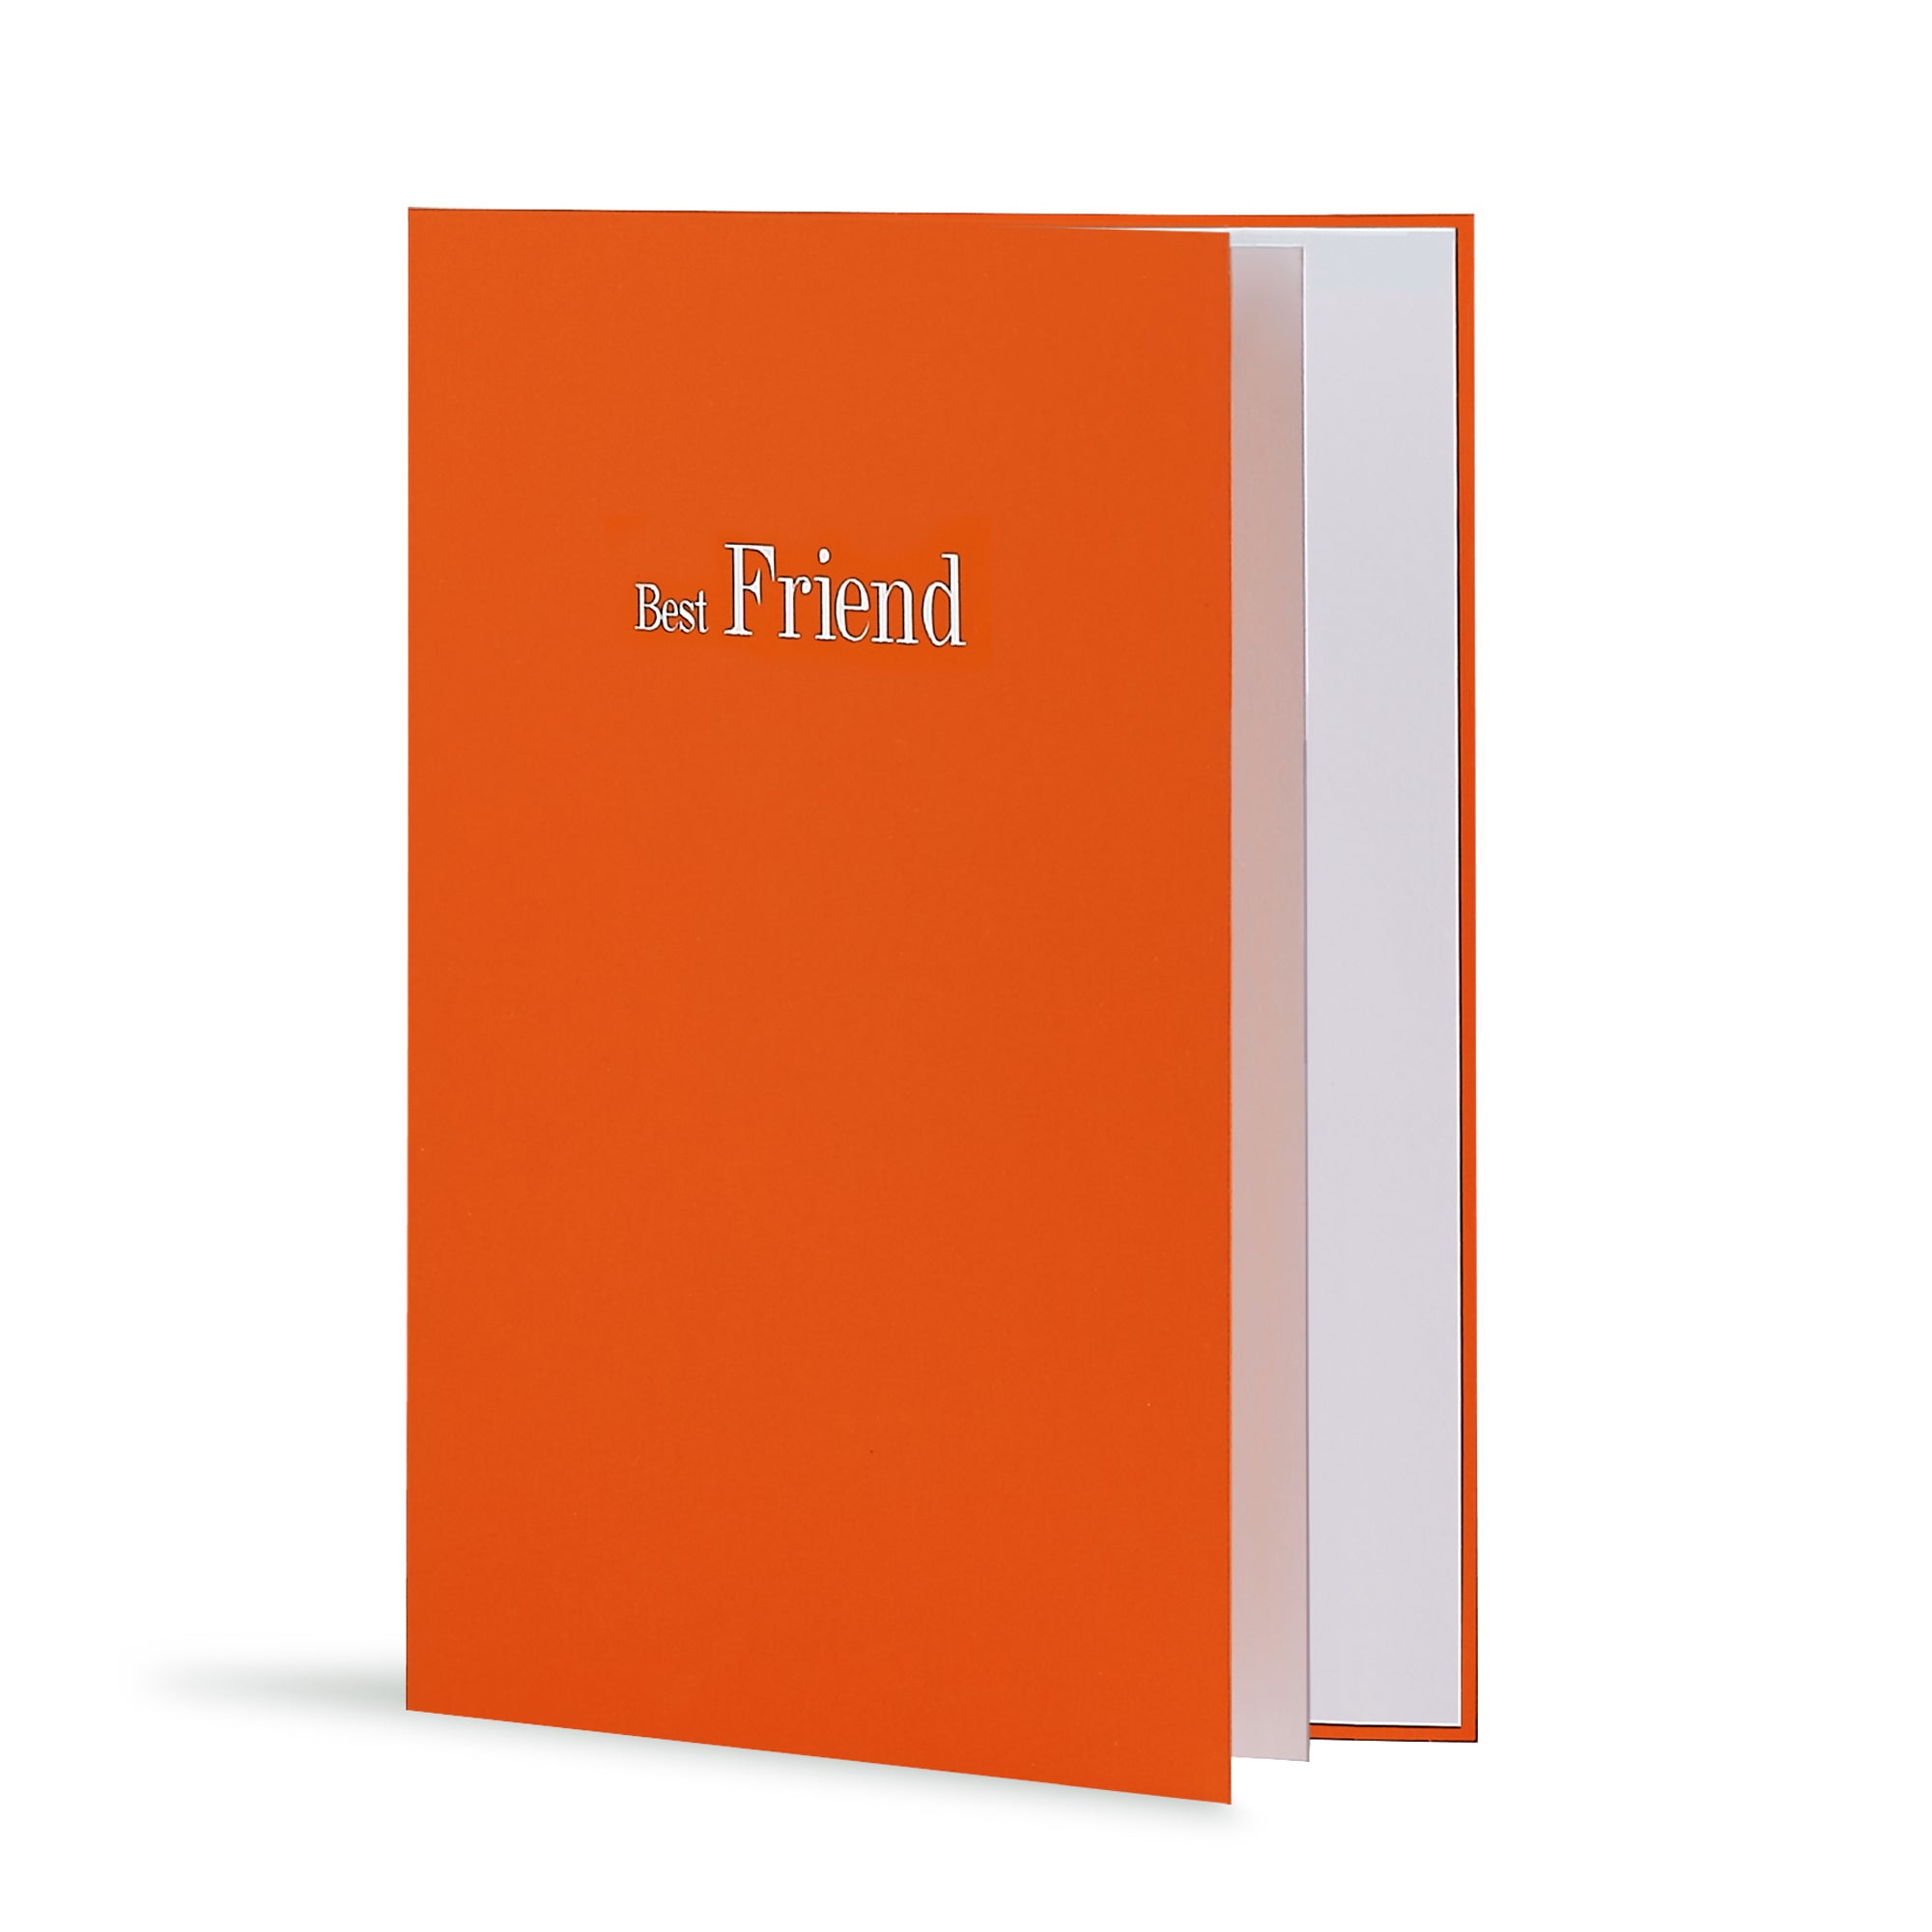 Best Friend Greeting Card in Orange, Side